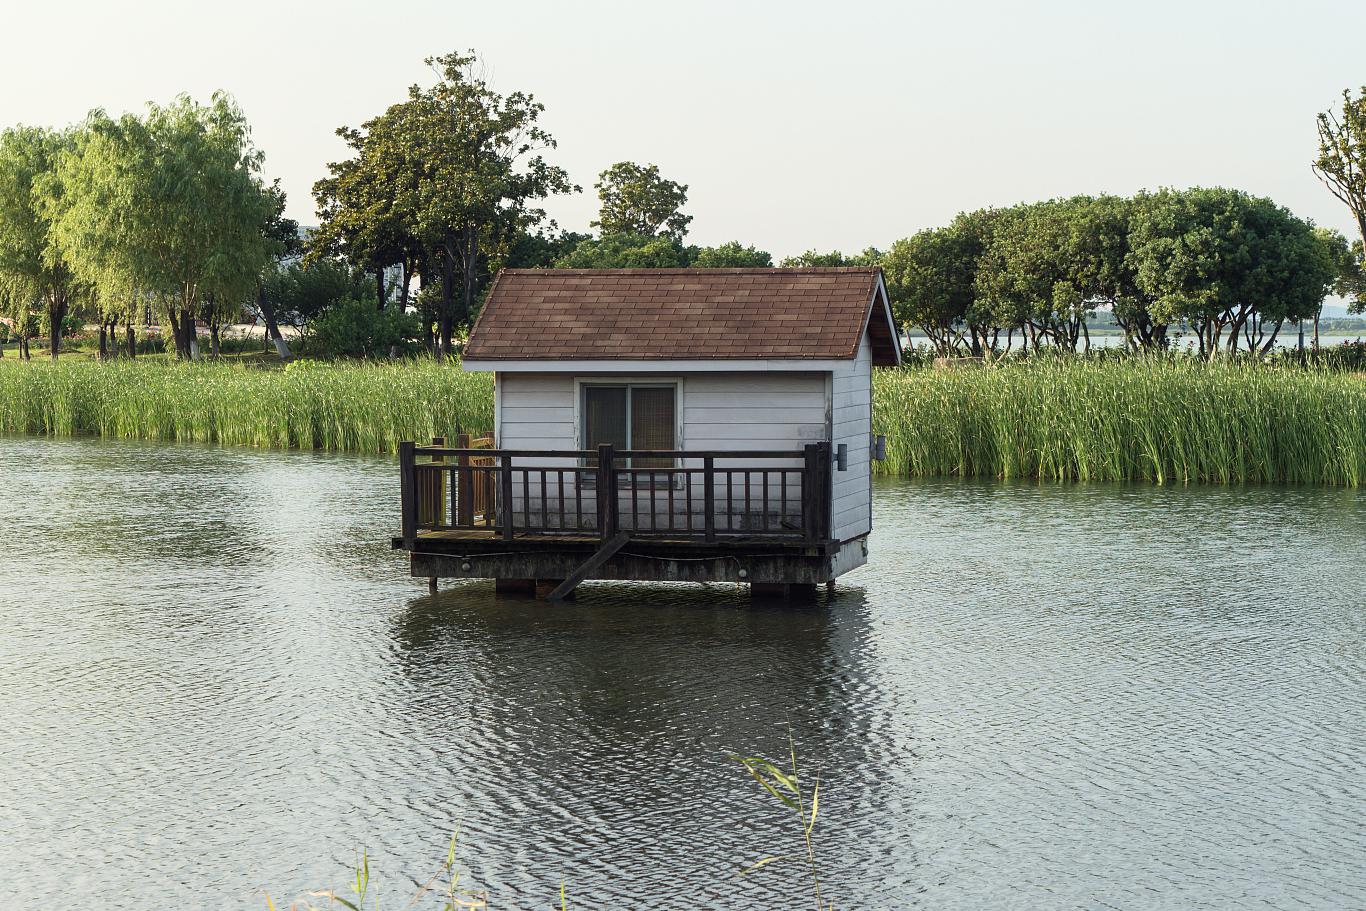 淀山湖归园游玩攻略 淀山湖位于上海市郊,是一个集自然景观和人文历史